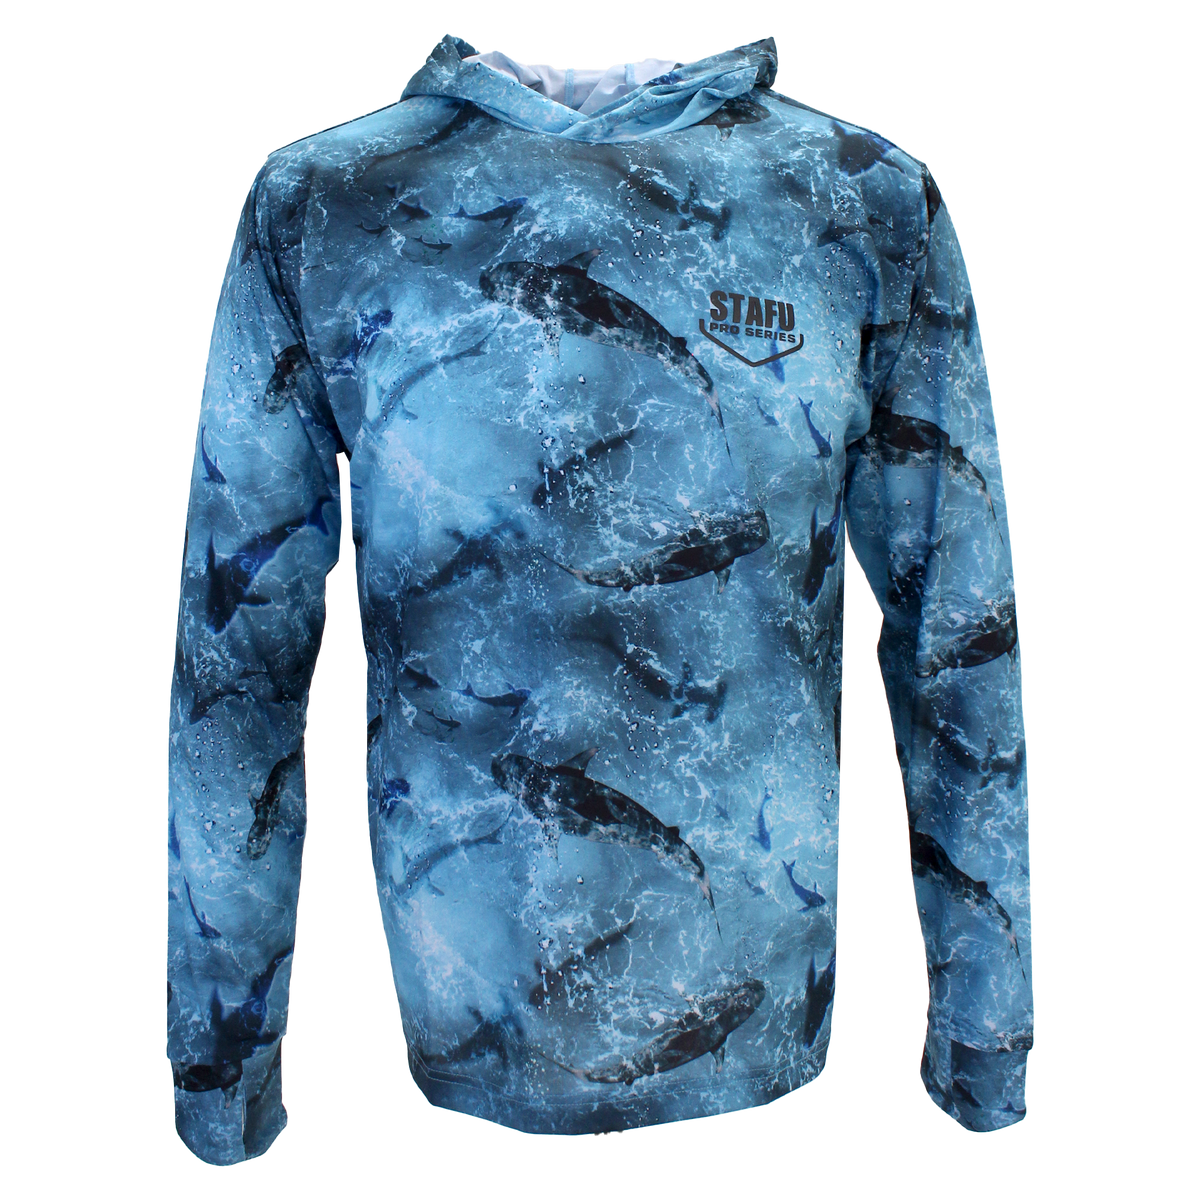 .99 Men's Hooded Long Sleeve Ultra Light Fisherman Sailor Shark Patterned Blue UV Protected Shirt